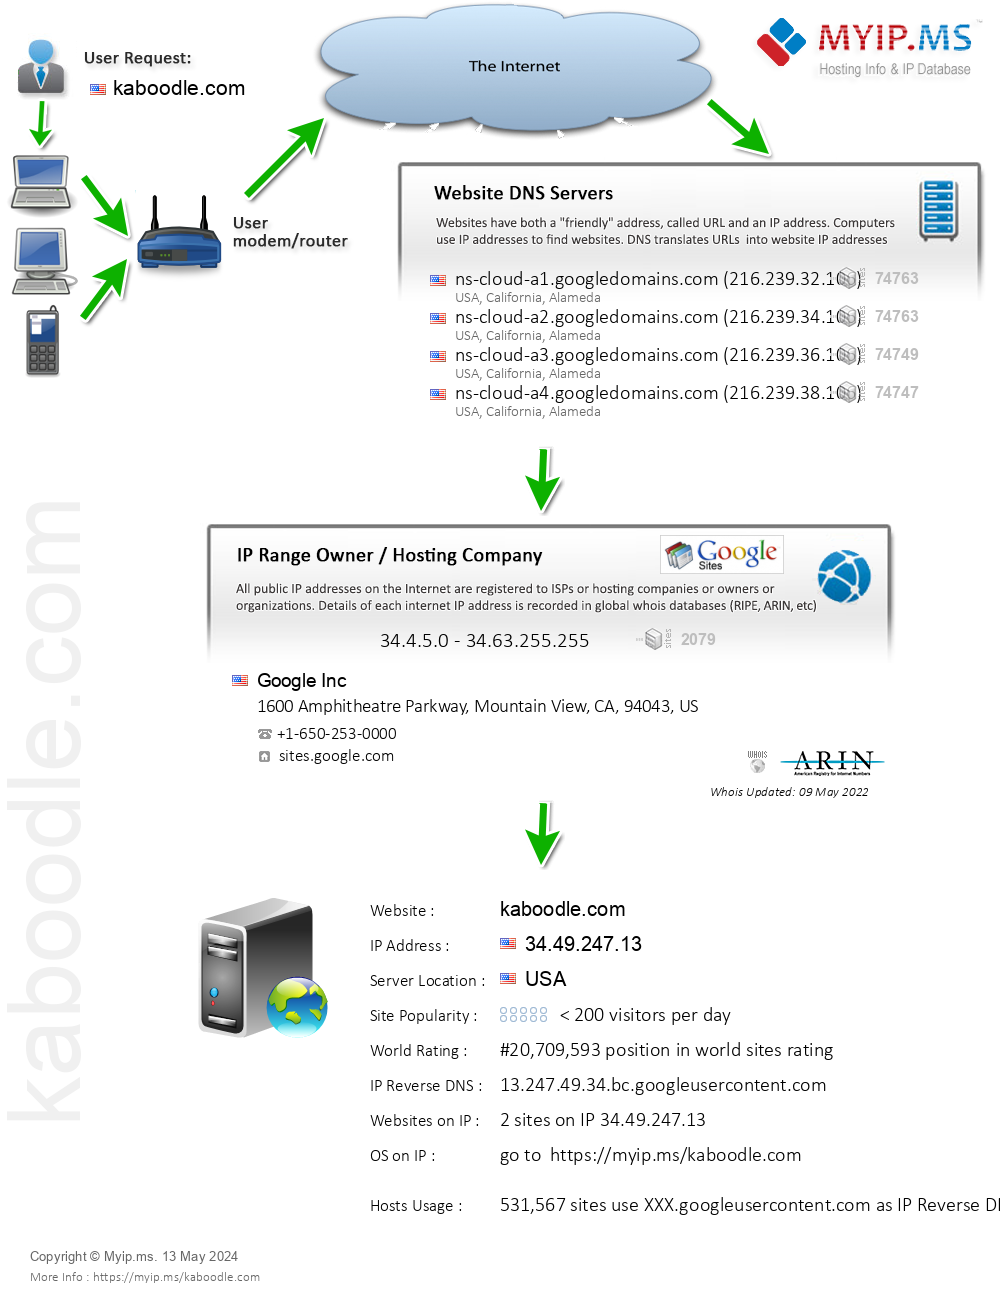 Kaboodle.com - Website Hosting Visual IP Diagram